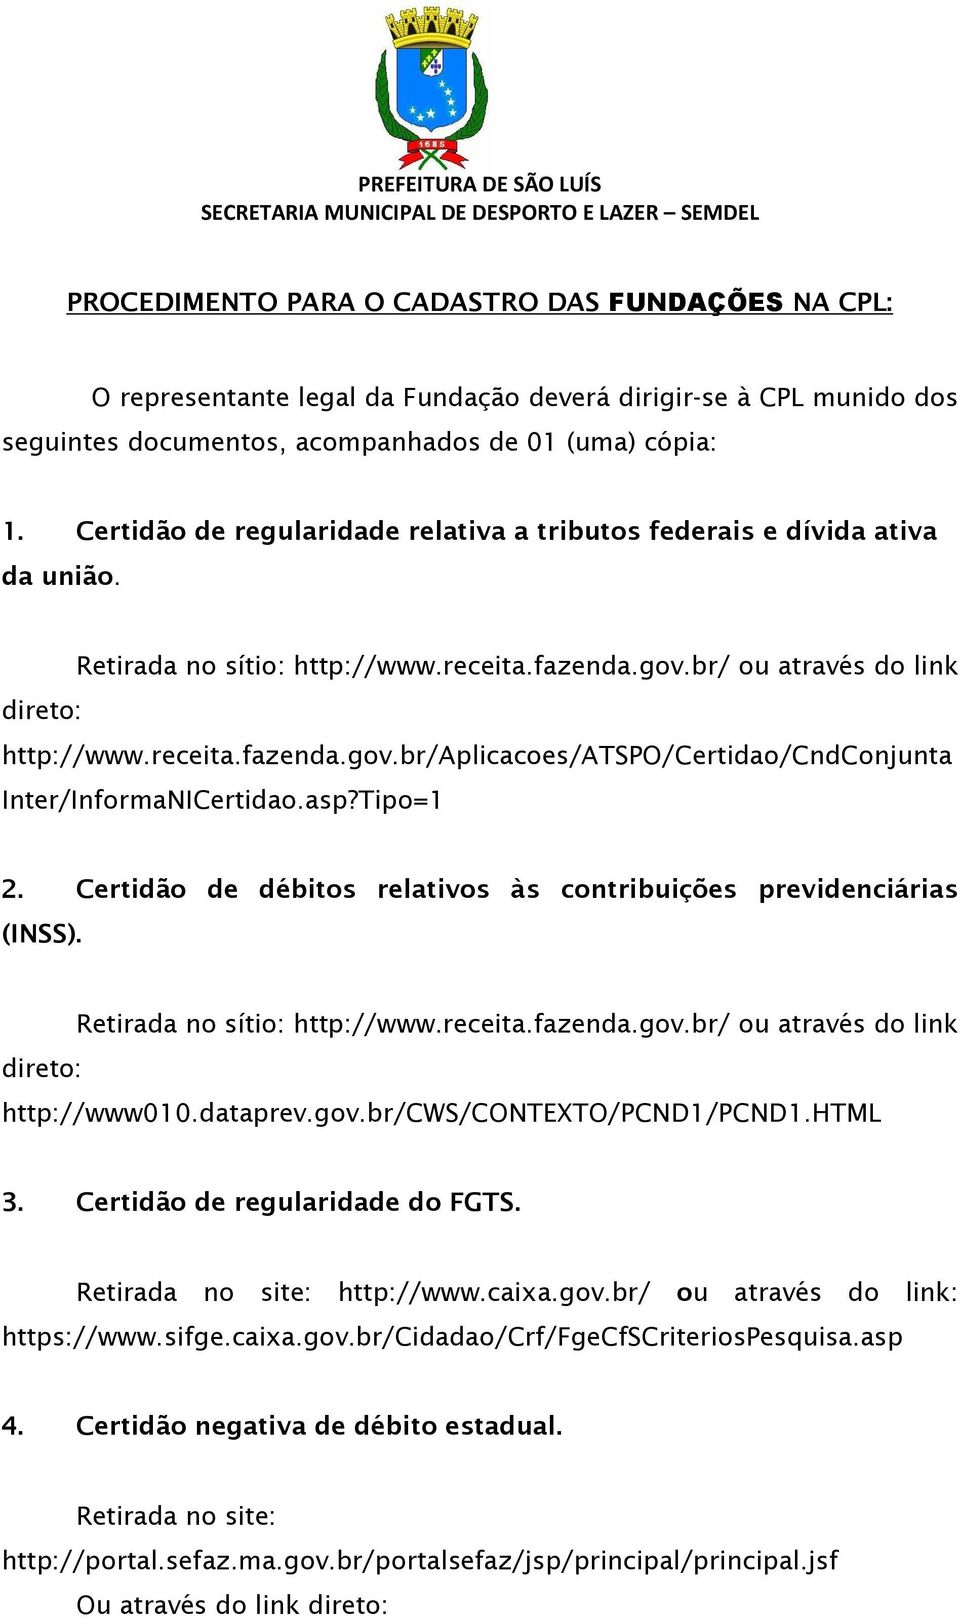 asp?Tipo=1 2. Certidão de débitos relativos às contribuições previdenciárias (INSS). direto: Retirada no sítio: http://www.receita.fazenda.gov.br/ ou através do link http://www010.dataprev.gov.br/cws/contexto/pcnd1/pcnd1.